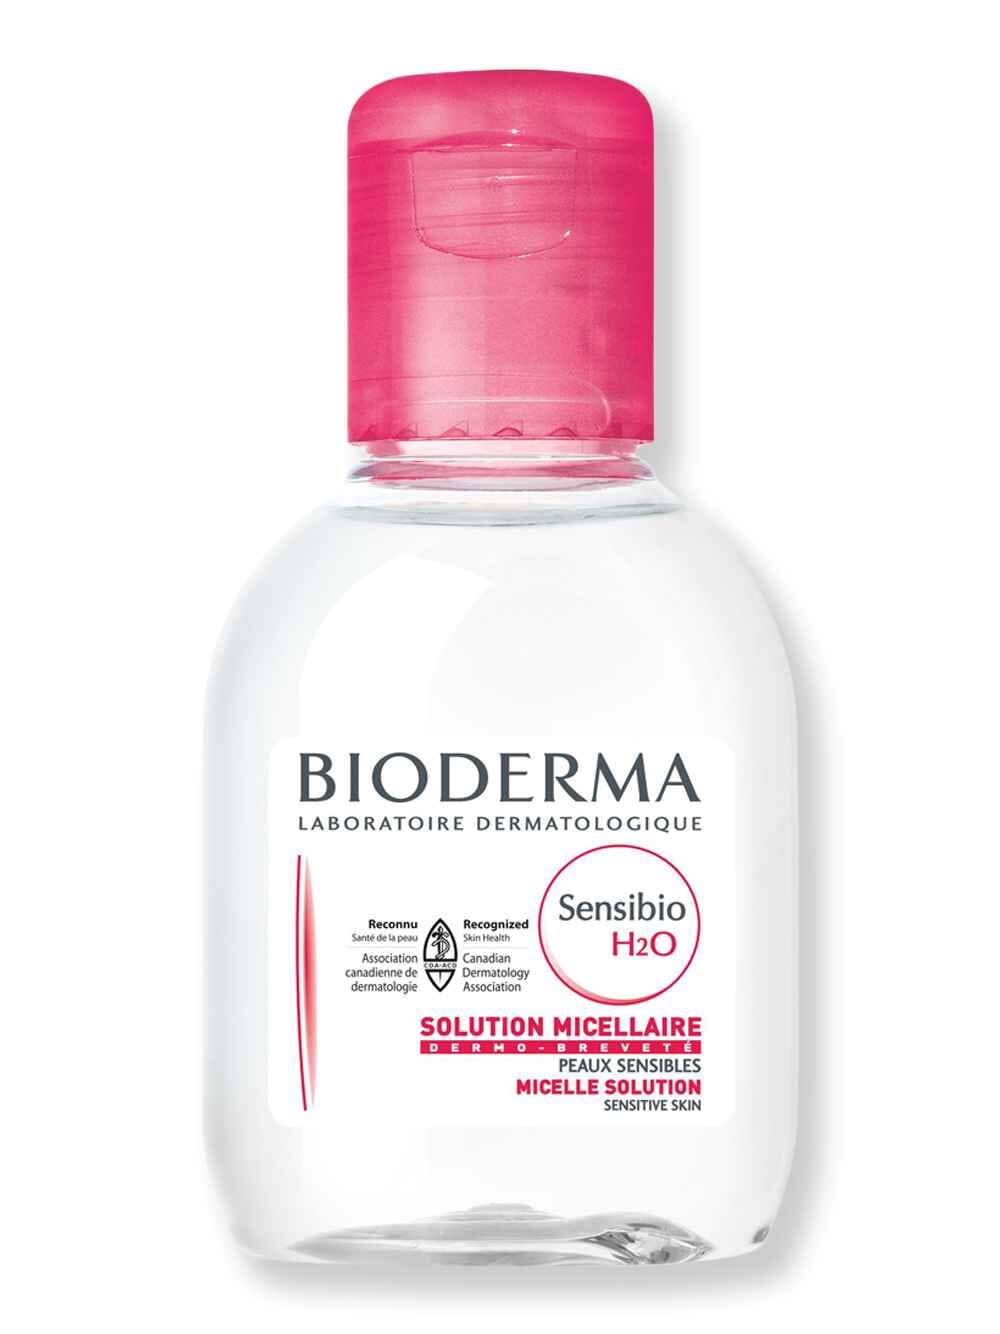 Bioderma Bioderma Sensibio H2O 3.4 fl oz100 ml Face Cleansers 